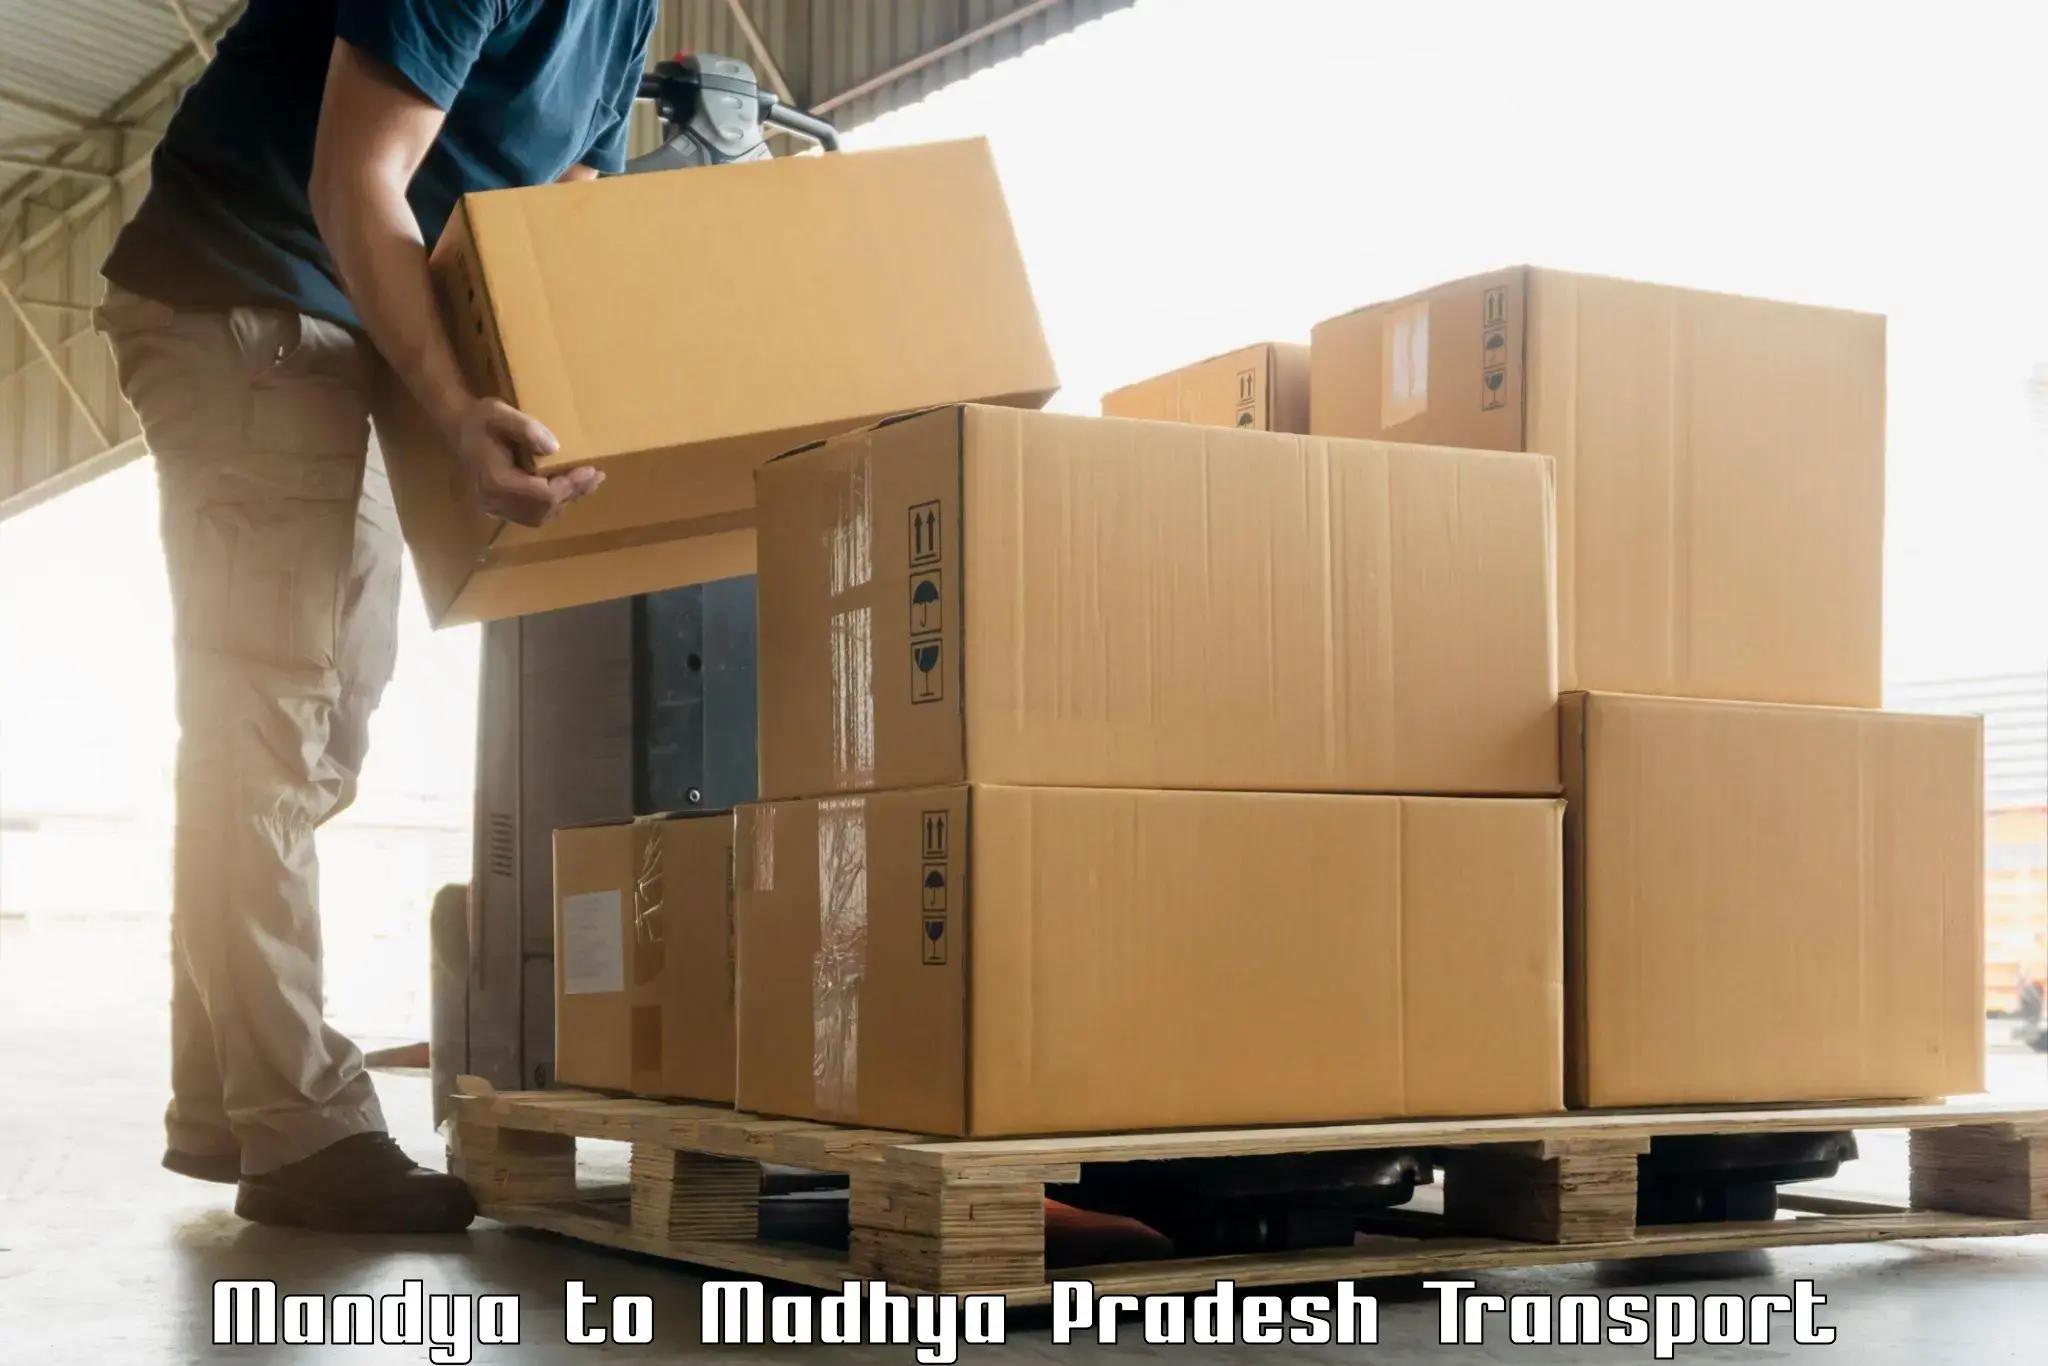 Air freight transport services Mandya to Garh Rewa